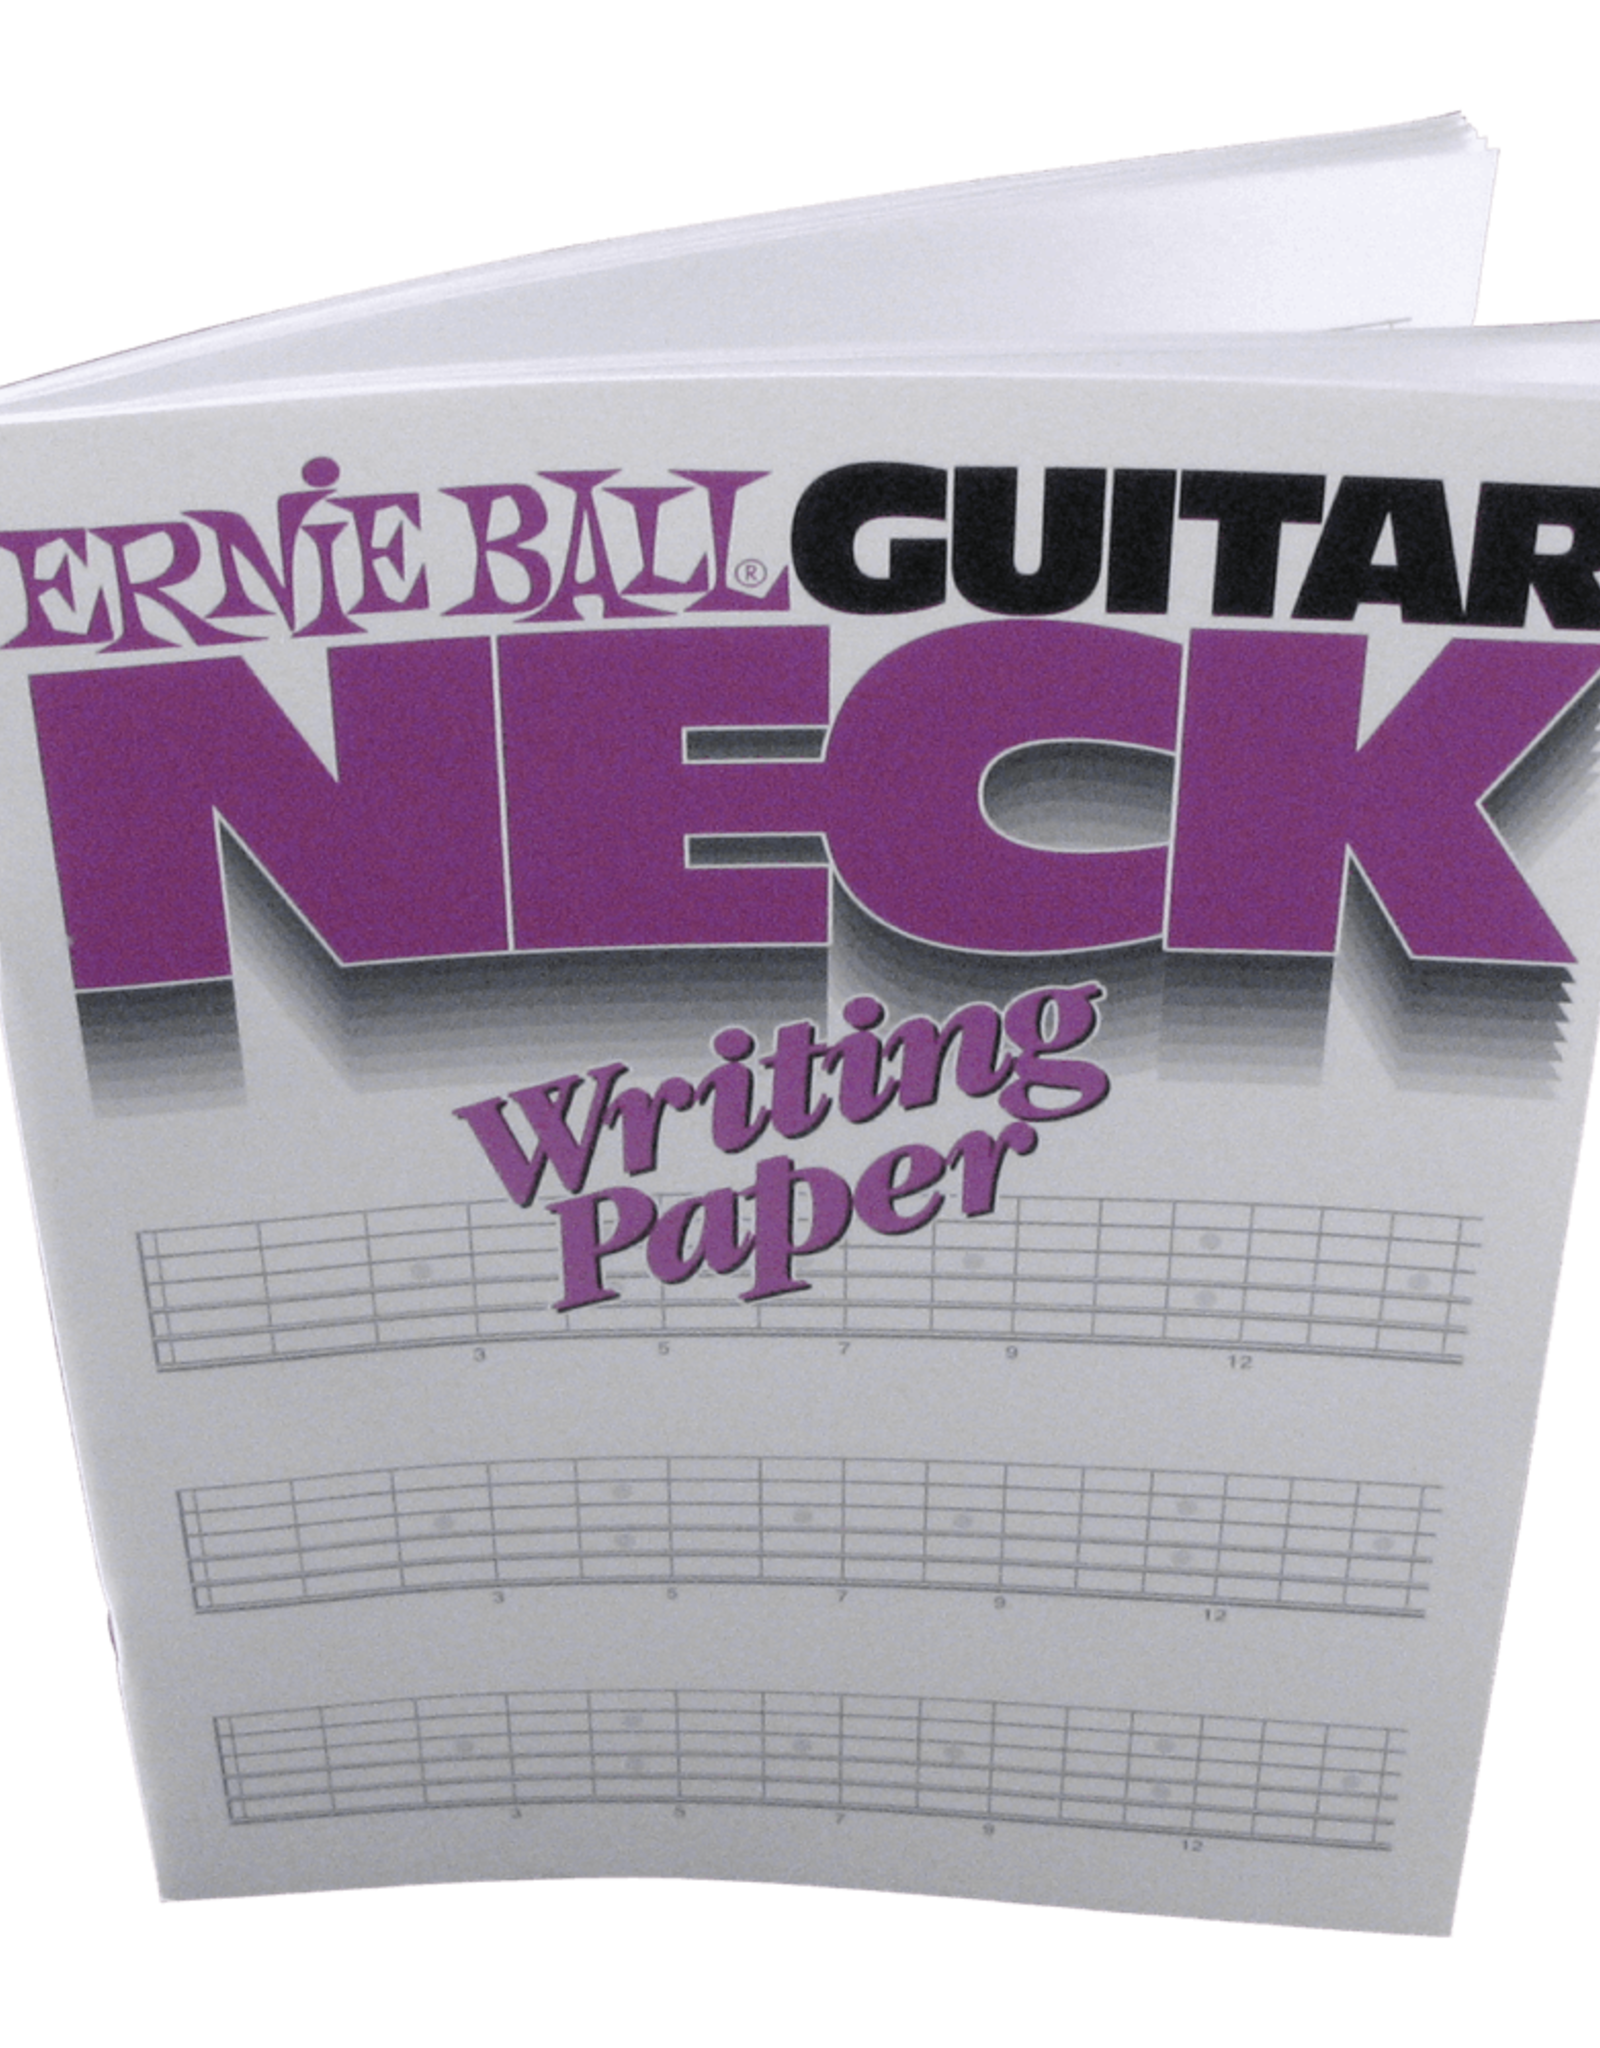 Ernie Ball Ernie Ball Guitar Neck Writing Paper